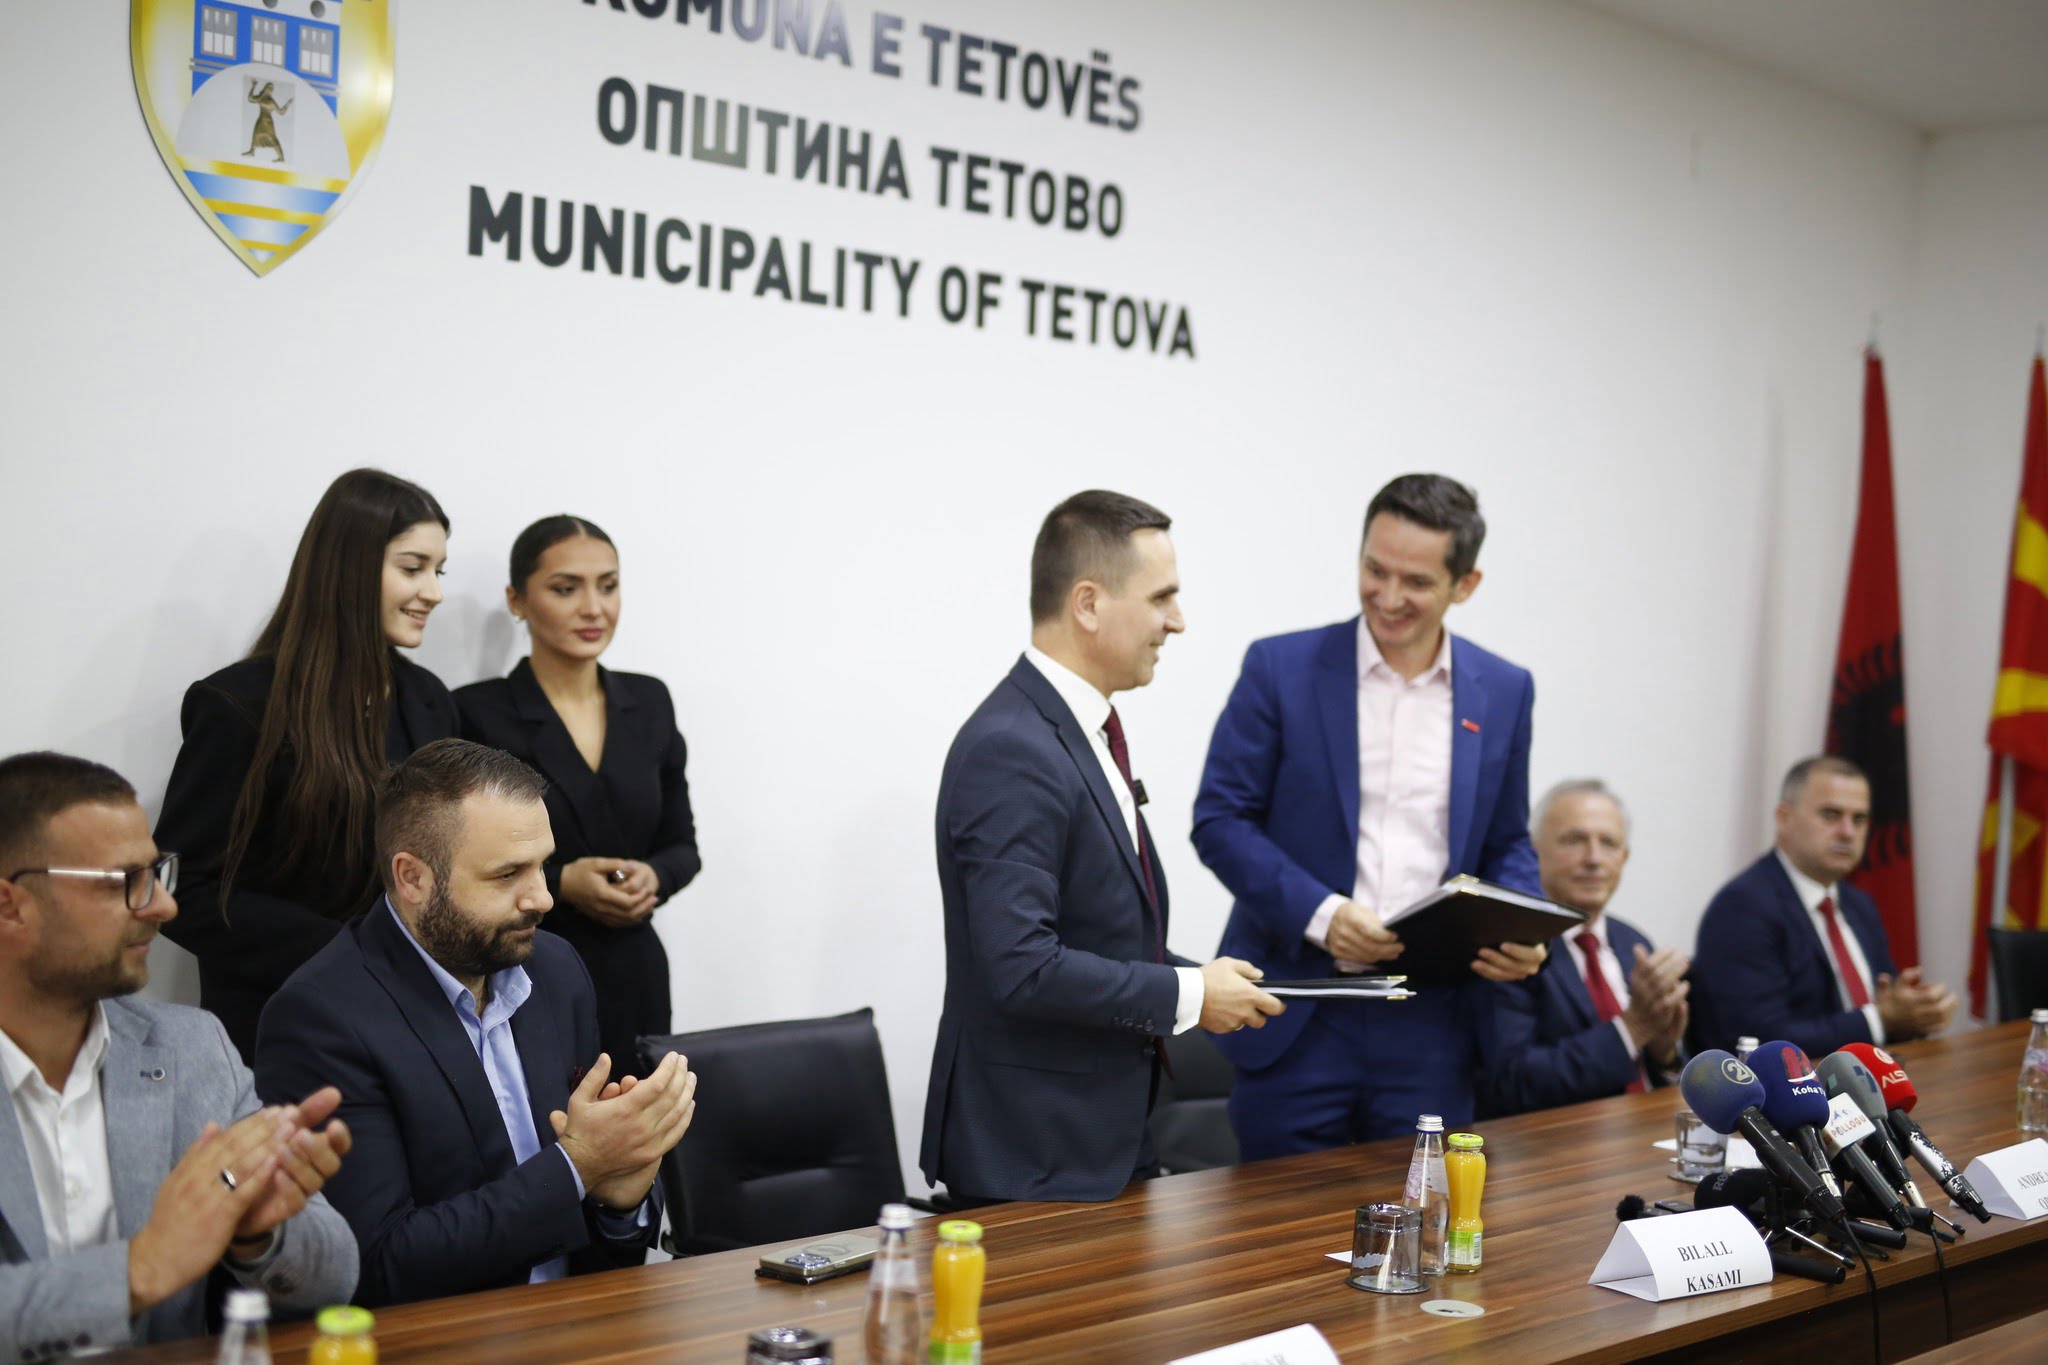 Kompania sllovene do të menaxhojë me mbeturinat e Tetovës